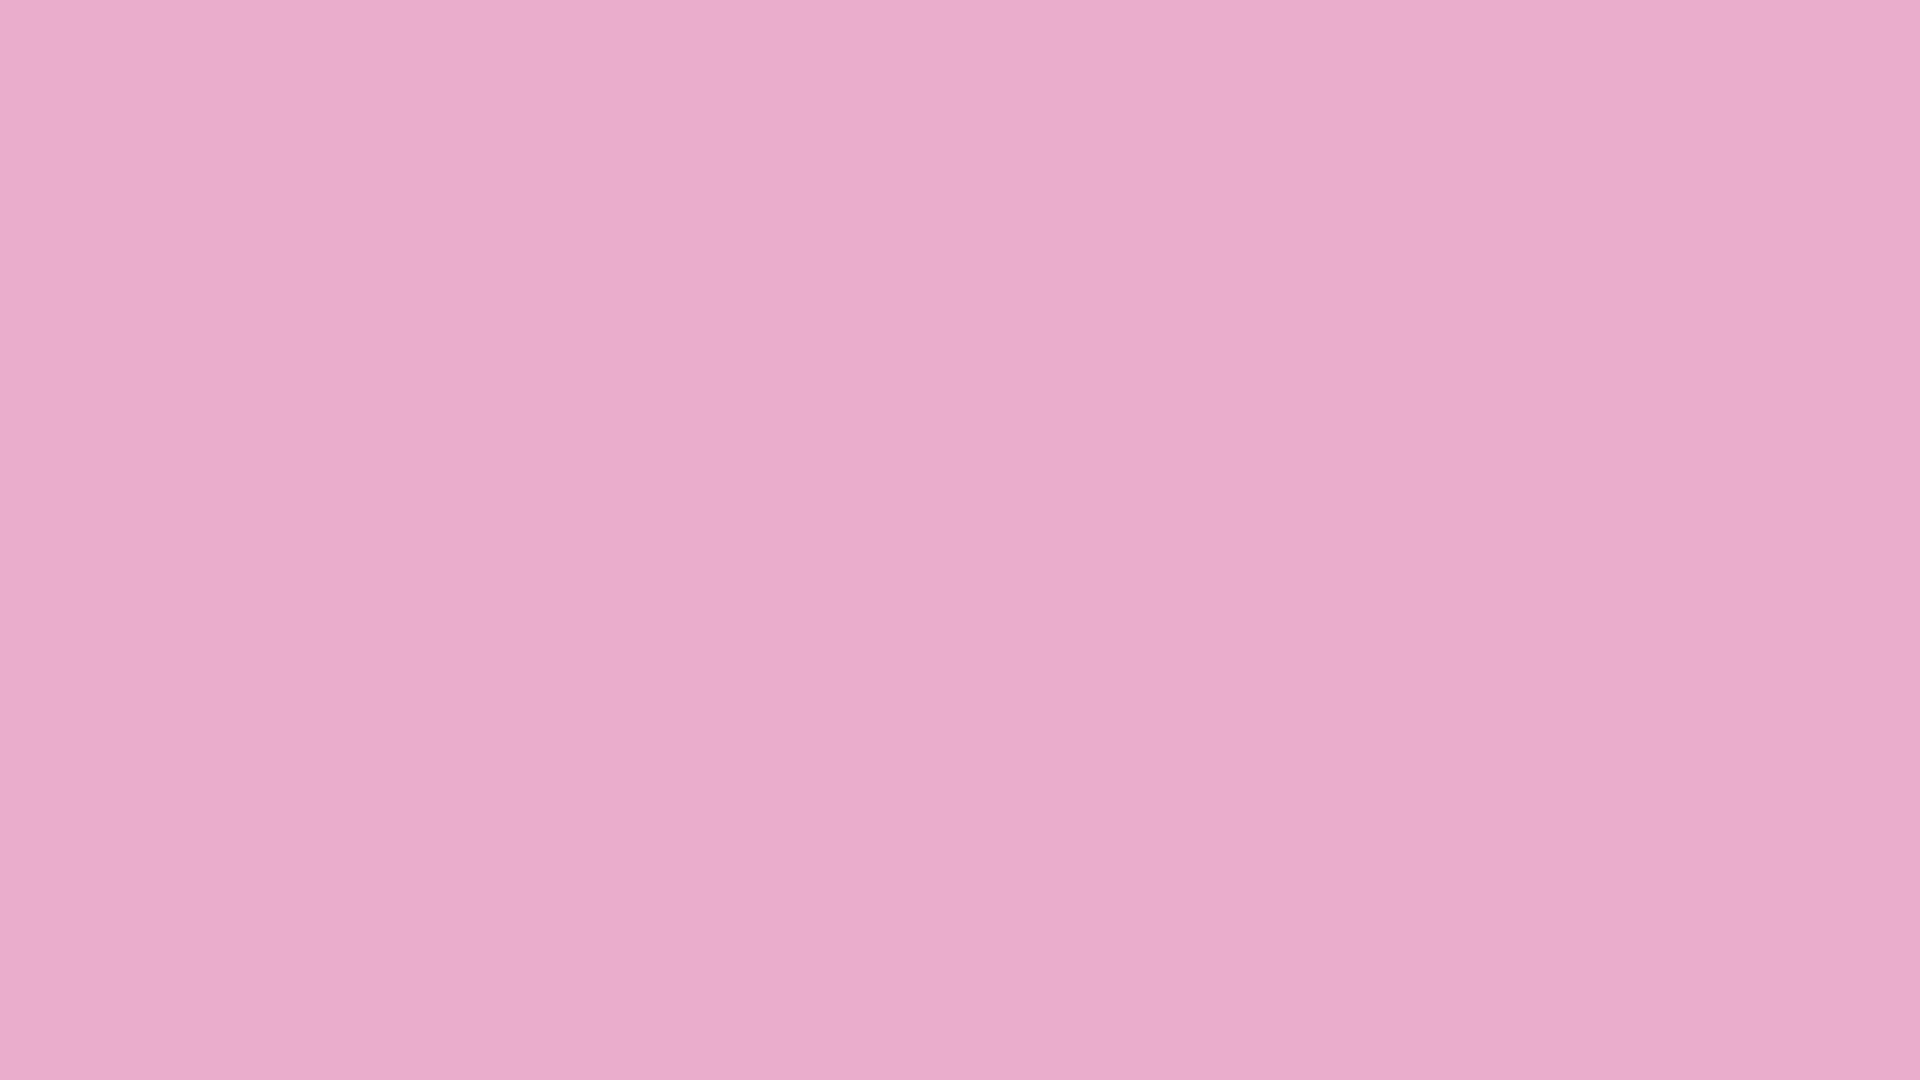 Solid Light Pink Desktop Wallpapers - Wallpaper Cave